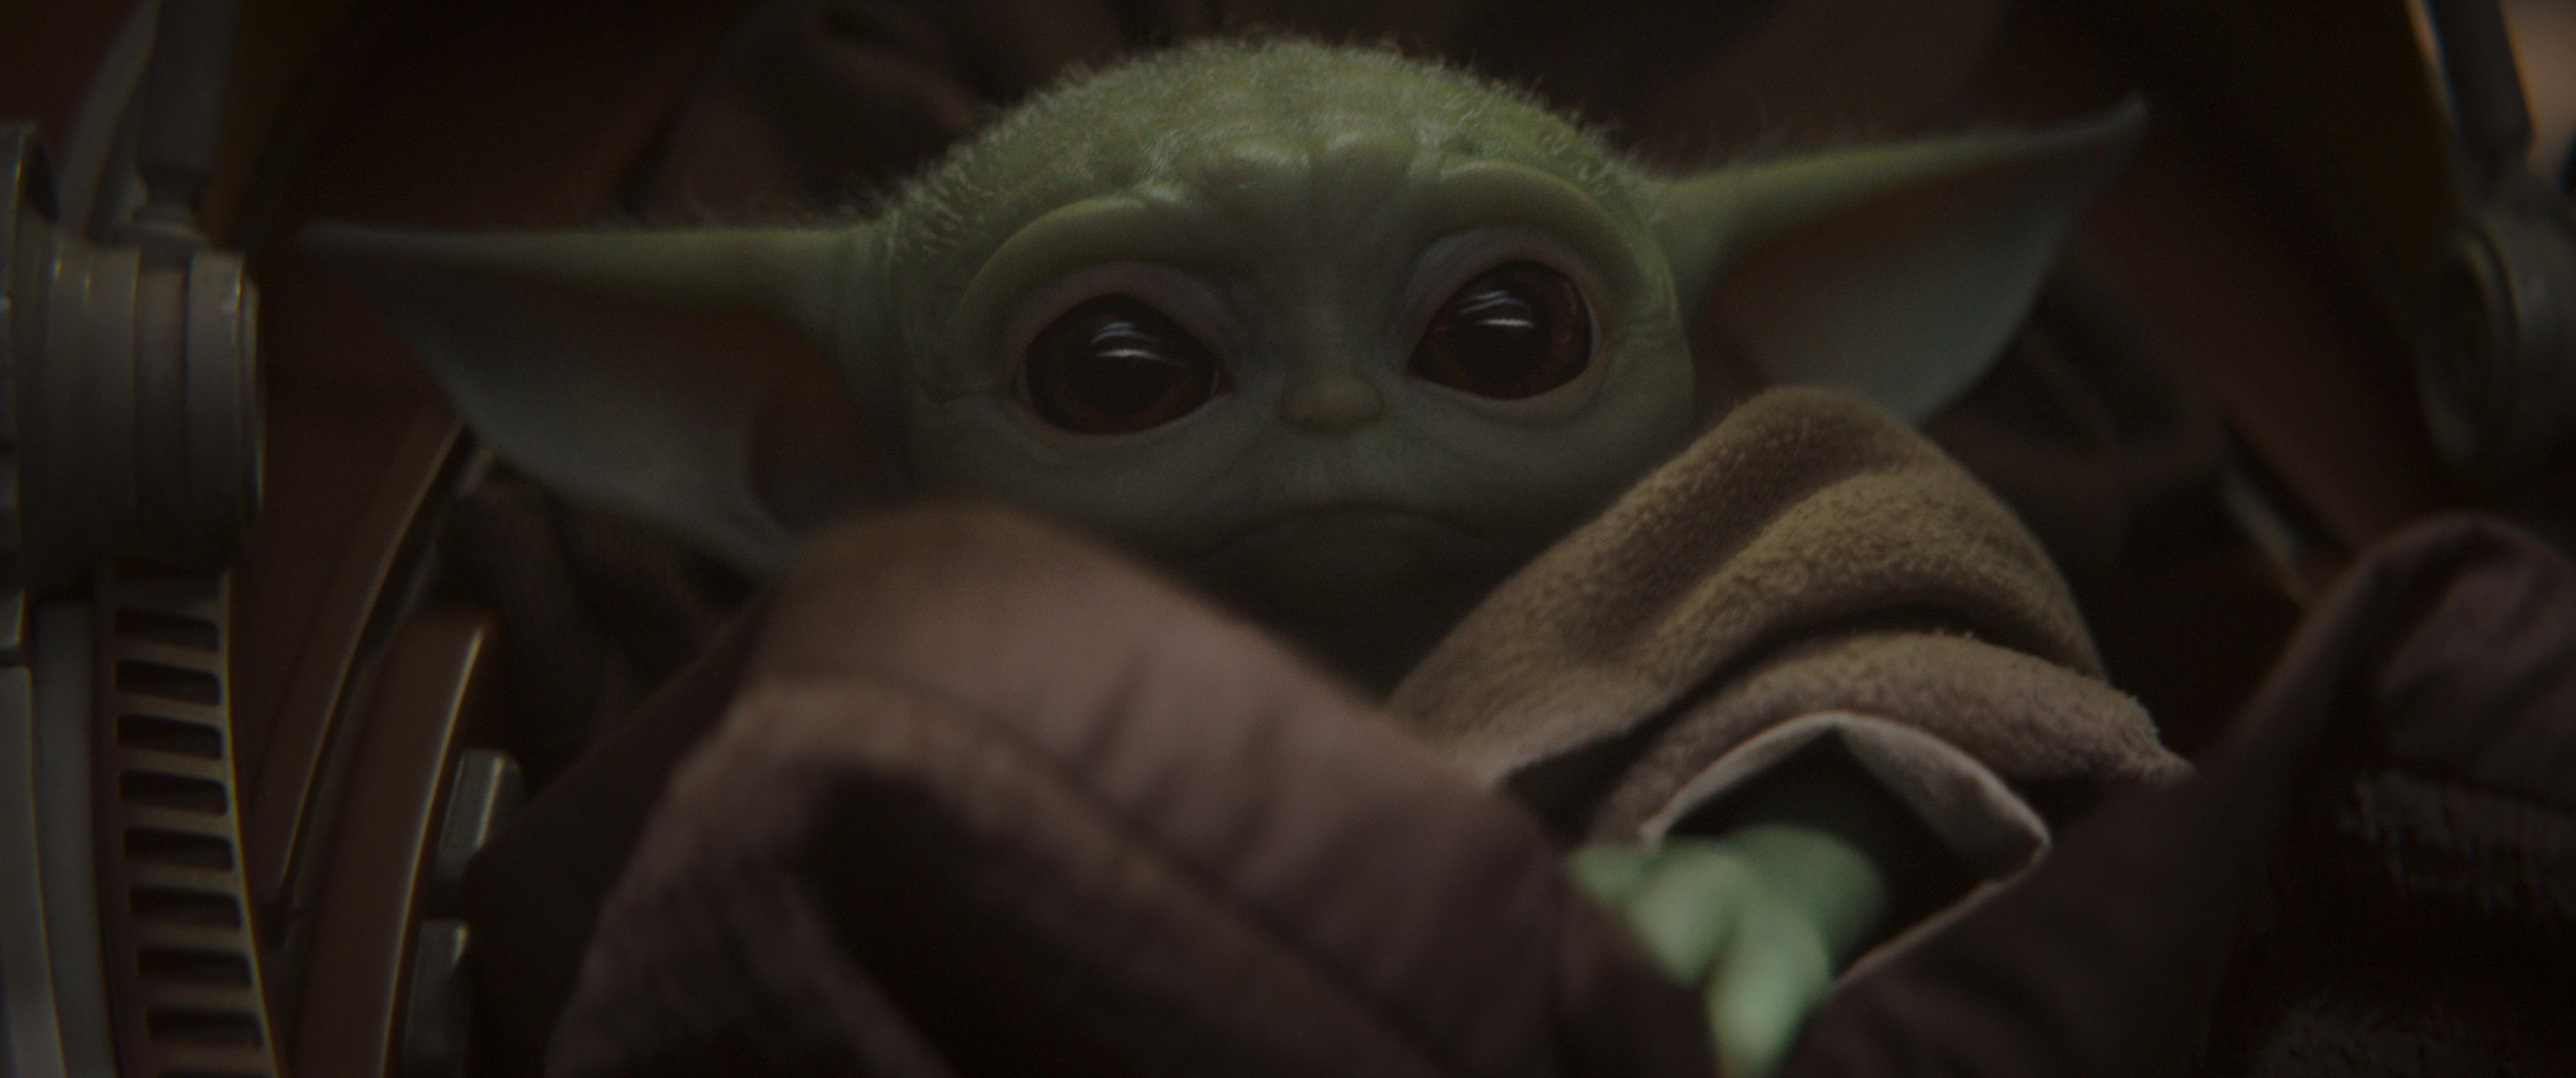 The Mandalorian's Baby Yoda Has Won the Internet's Heart